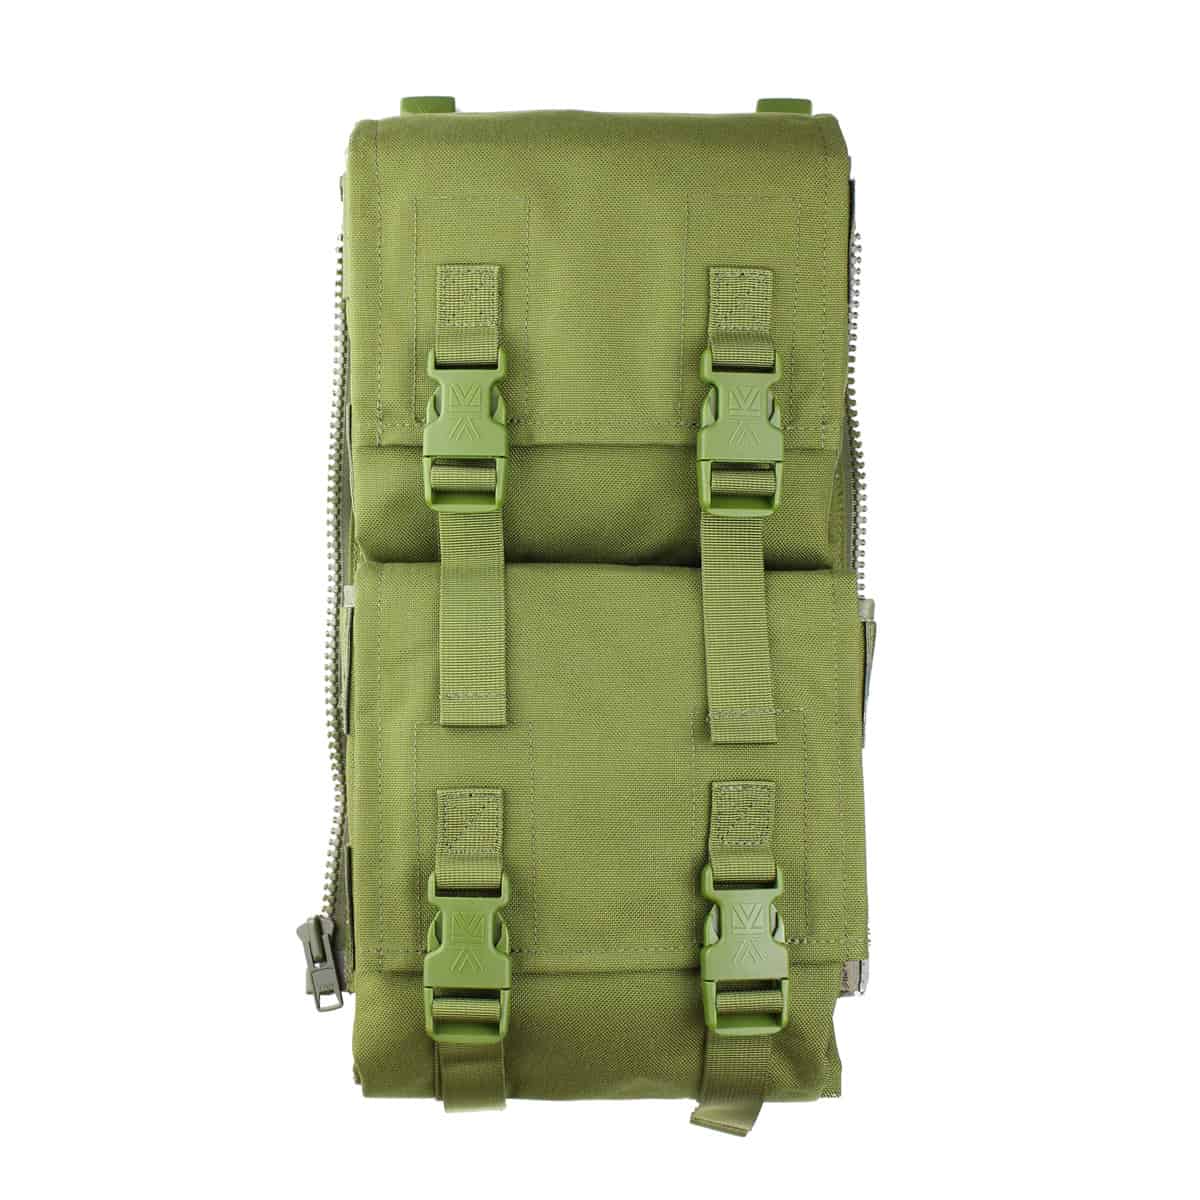 Stranska vojaška torba Predator Double Omni PLCE je vrhunski dodatek za vaš PLCE vojaški nahrbtnik. Izdelana je iz visokokakovostnega materiala. Povečajte vašo zmogljivost in organiziranost z izjemno prostornim dizajnom. Kupite zdaj in izboljšajte svoje vojaško opremljanje!